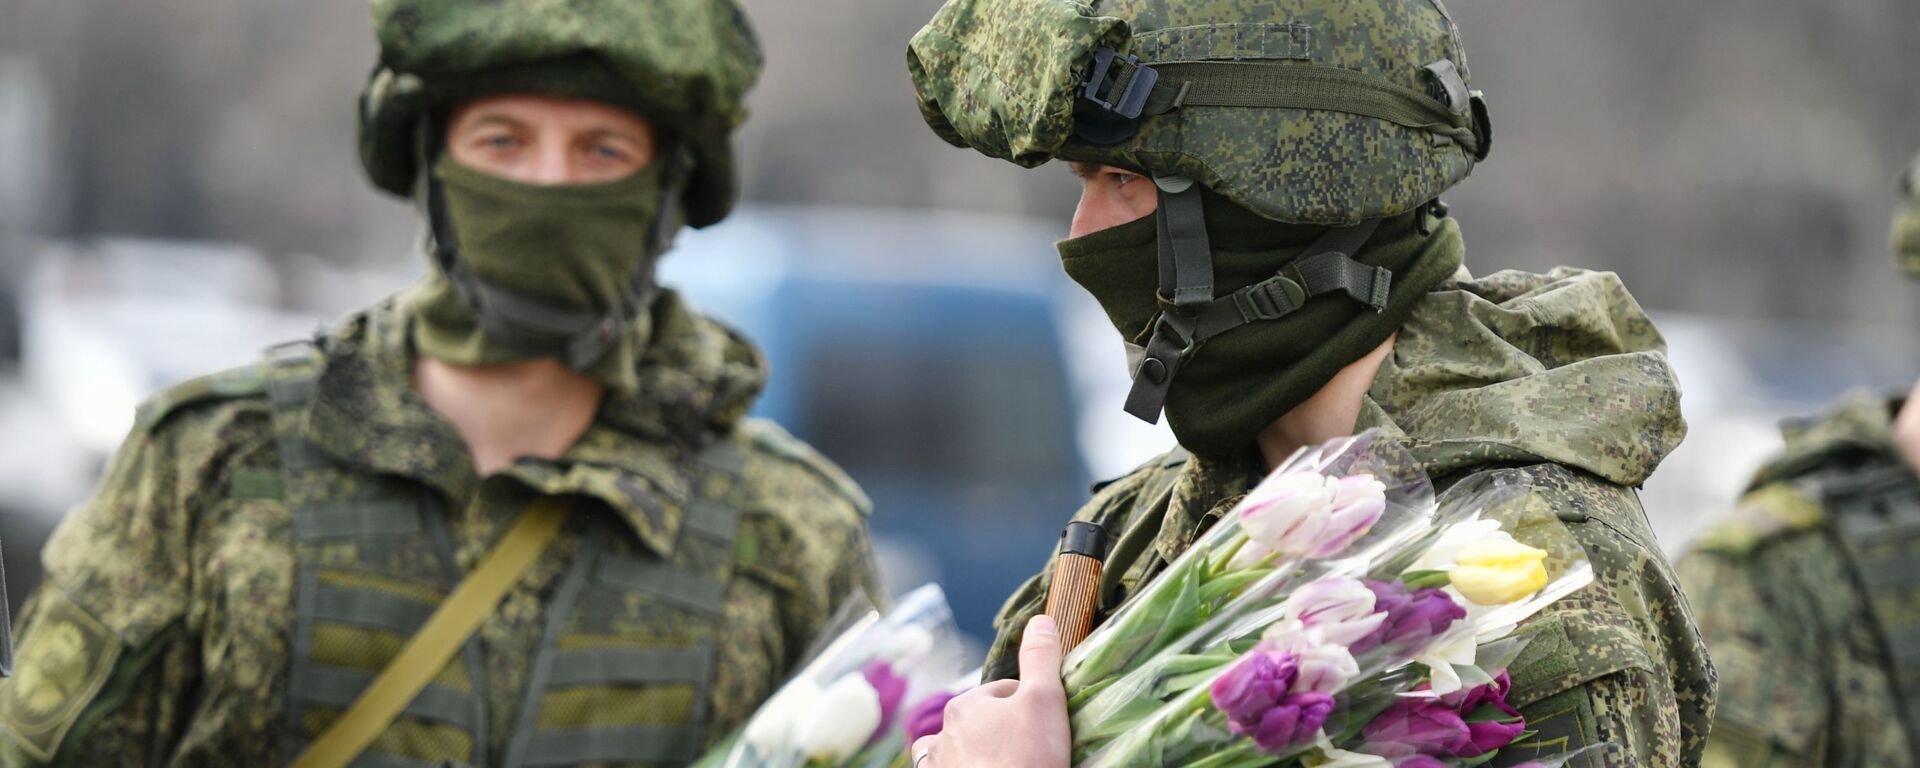 Militares rusos sostienen flores que regalarán con motivo del Día de la Mujer - Sputnik Mundo, 1920, 27.11.2021